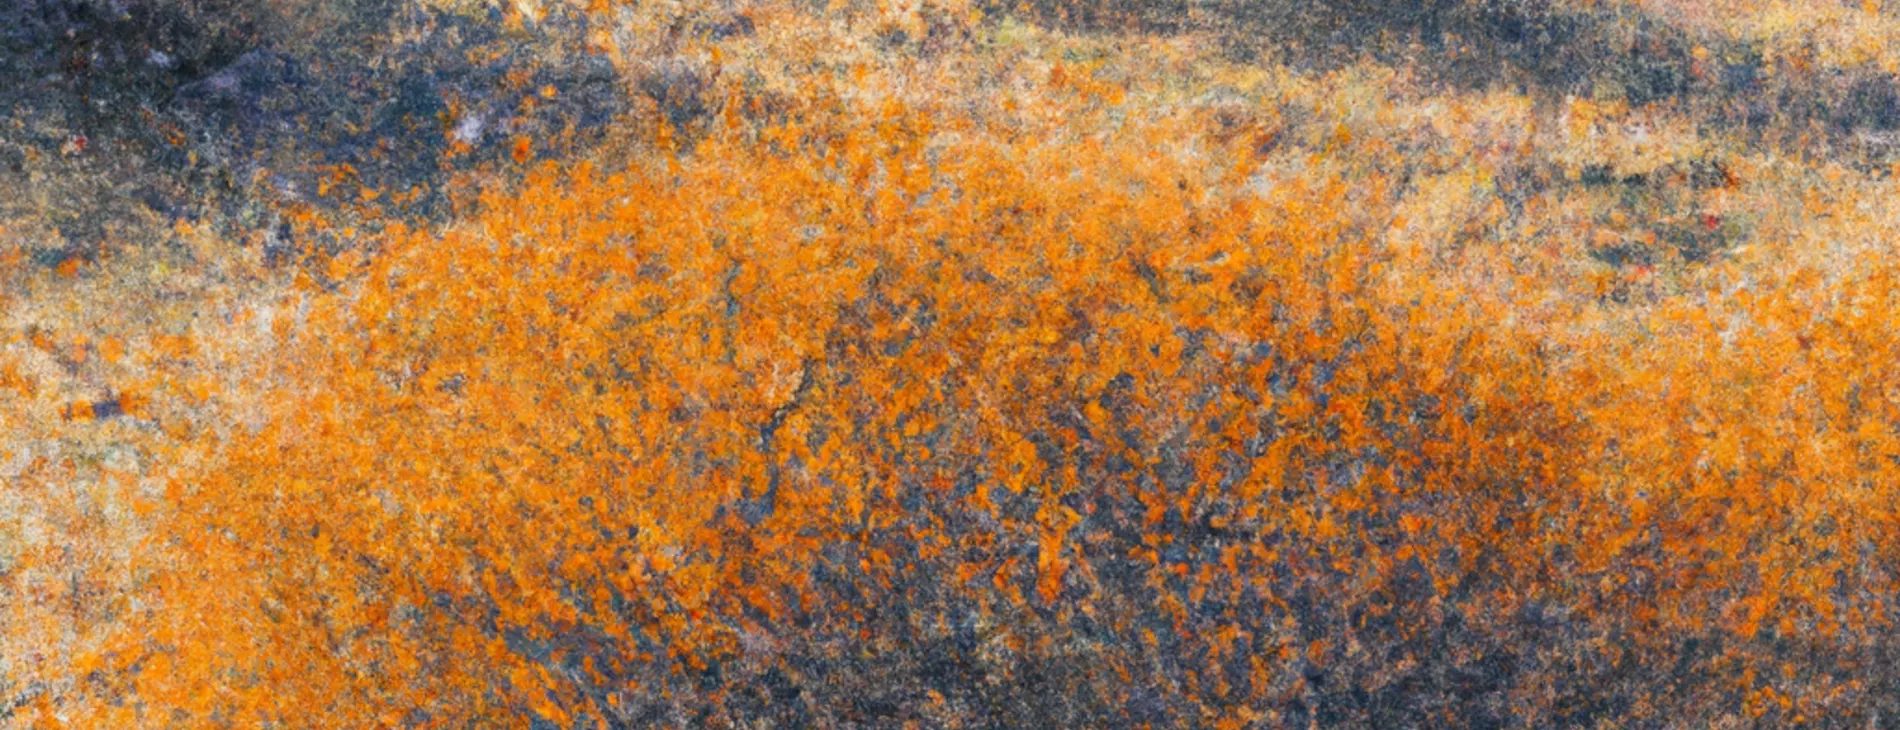 Rhapsody in orange - sea buckthorn landscape